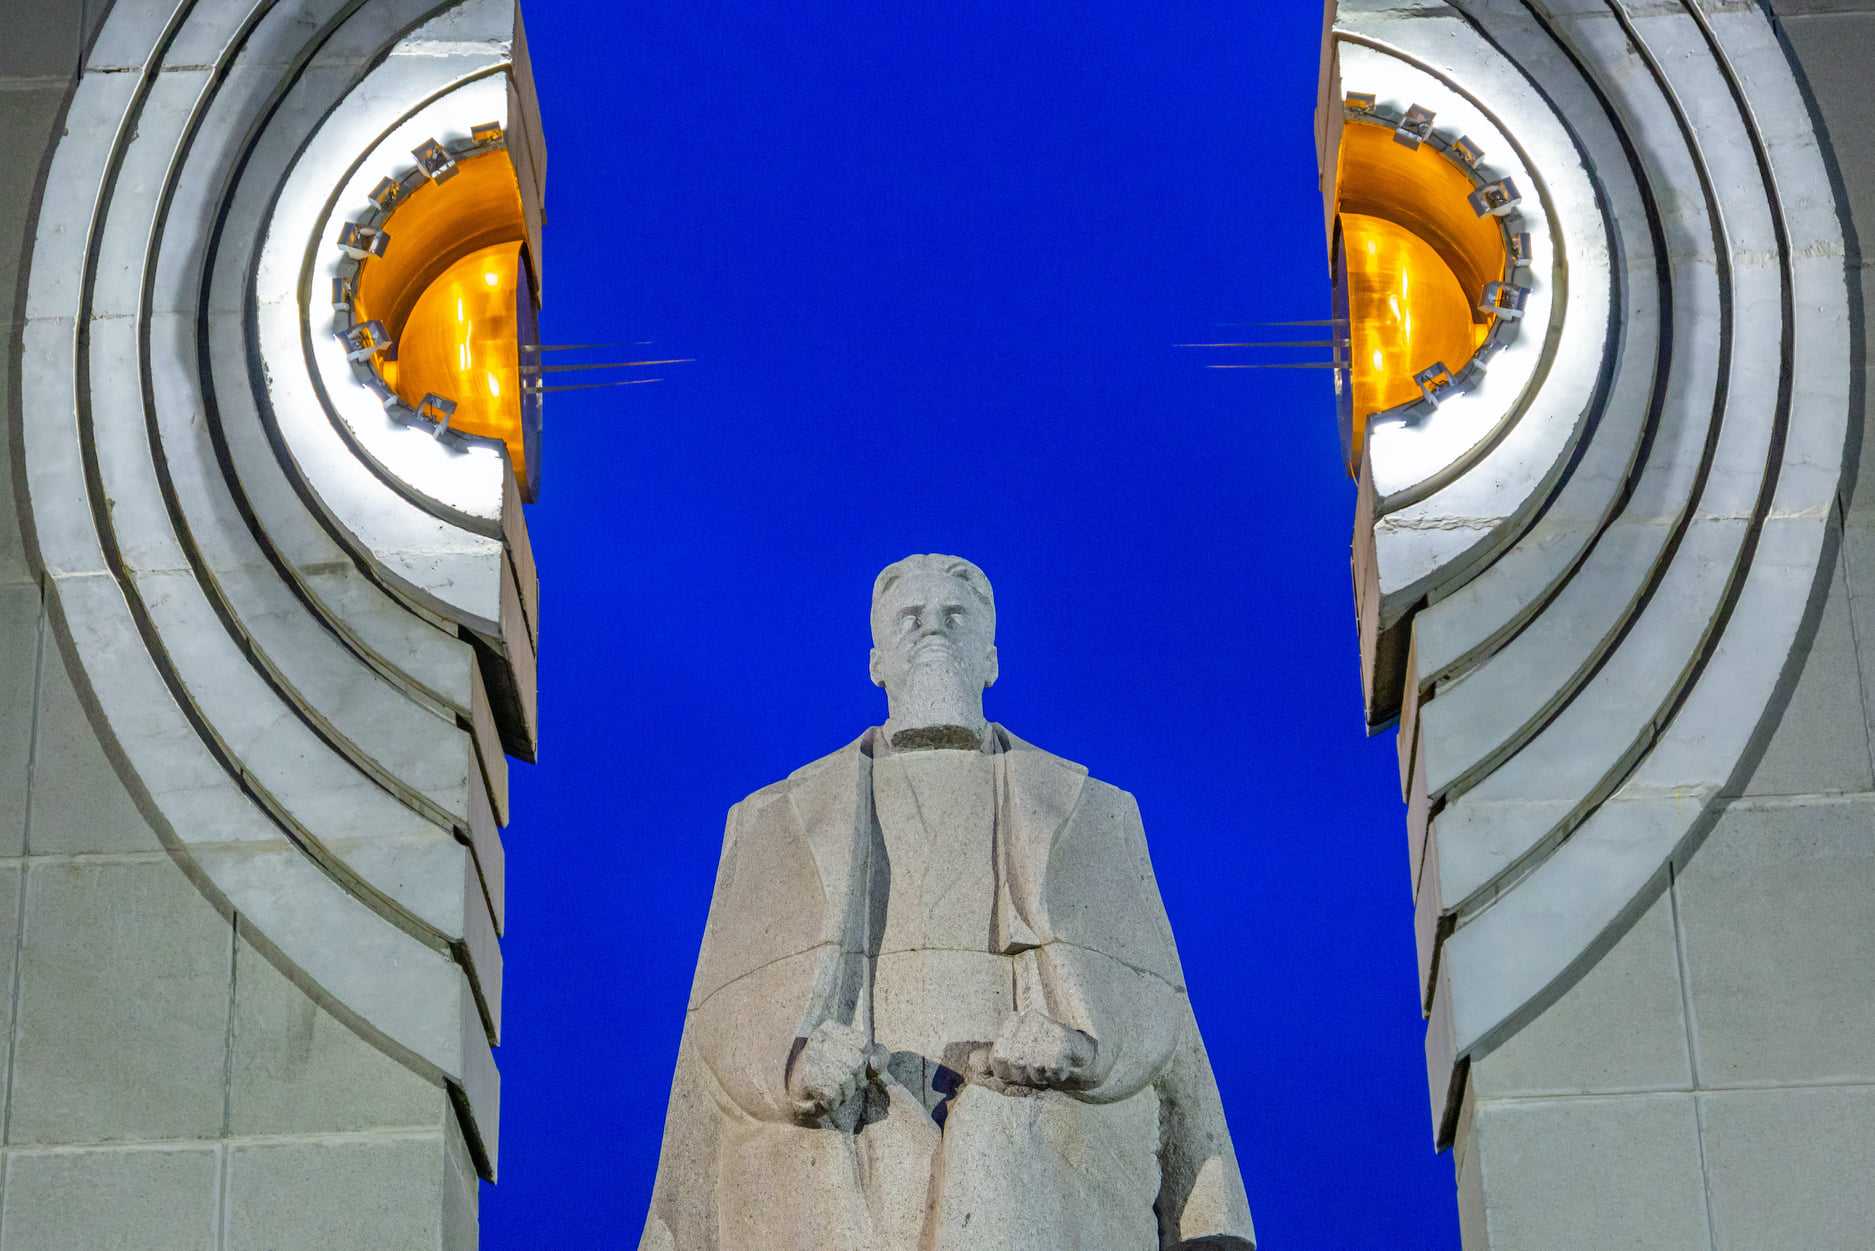 У памятника Курчатову в Челябинске появилась оригинальная подсветка